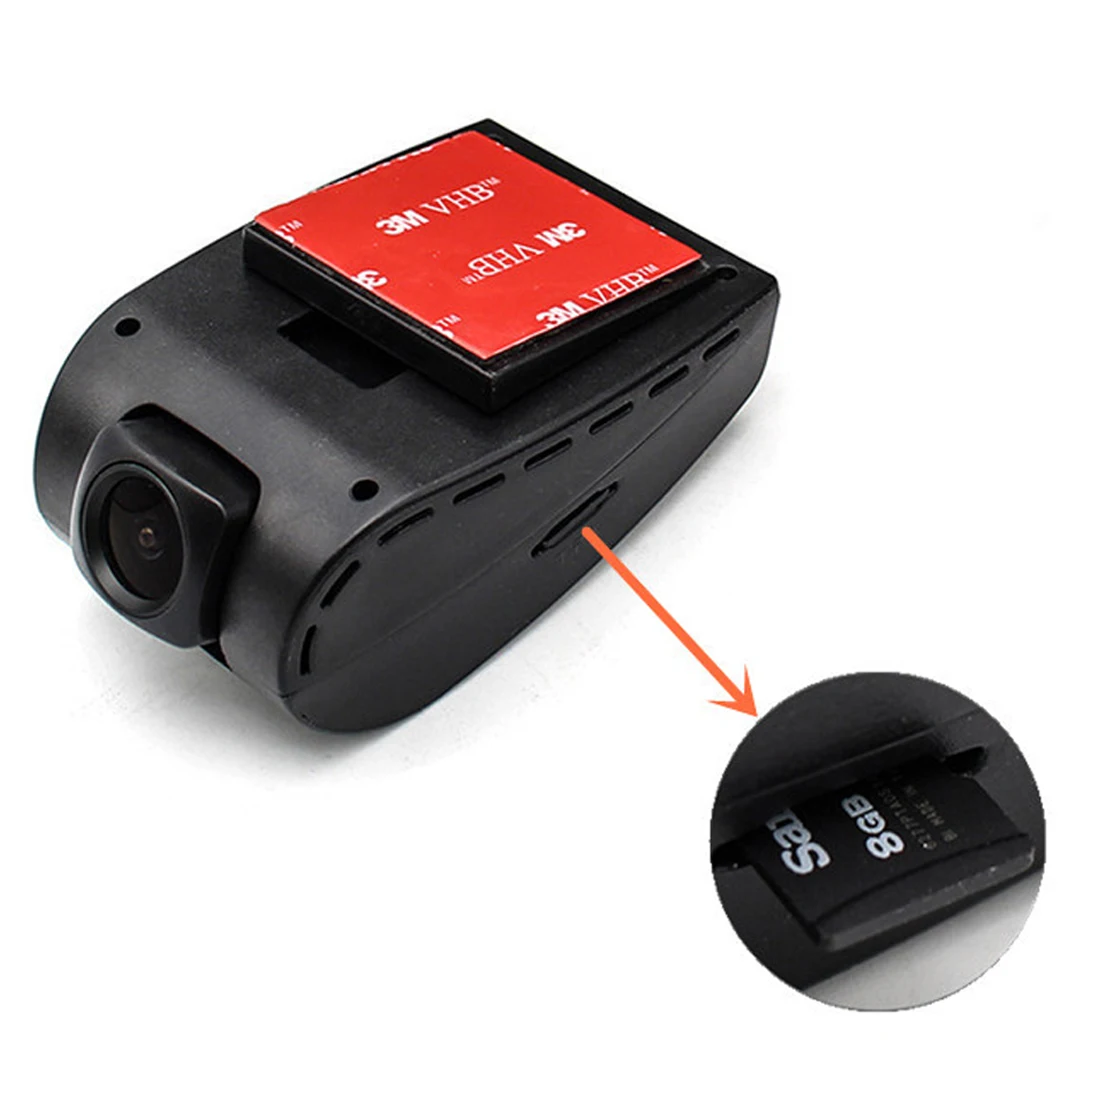 Dewtreetal Супер предложение Автомобильный видеорегистратор Камера USB dvr камера для Android 4,2/4,4/5.1.1/6.0.1 автомобильный ПК DVR камера рекордер вождения